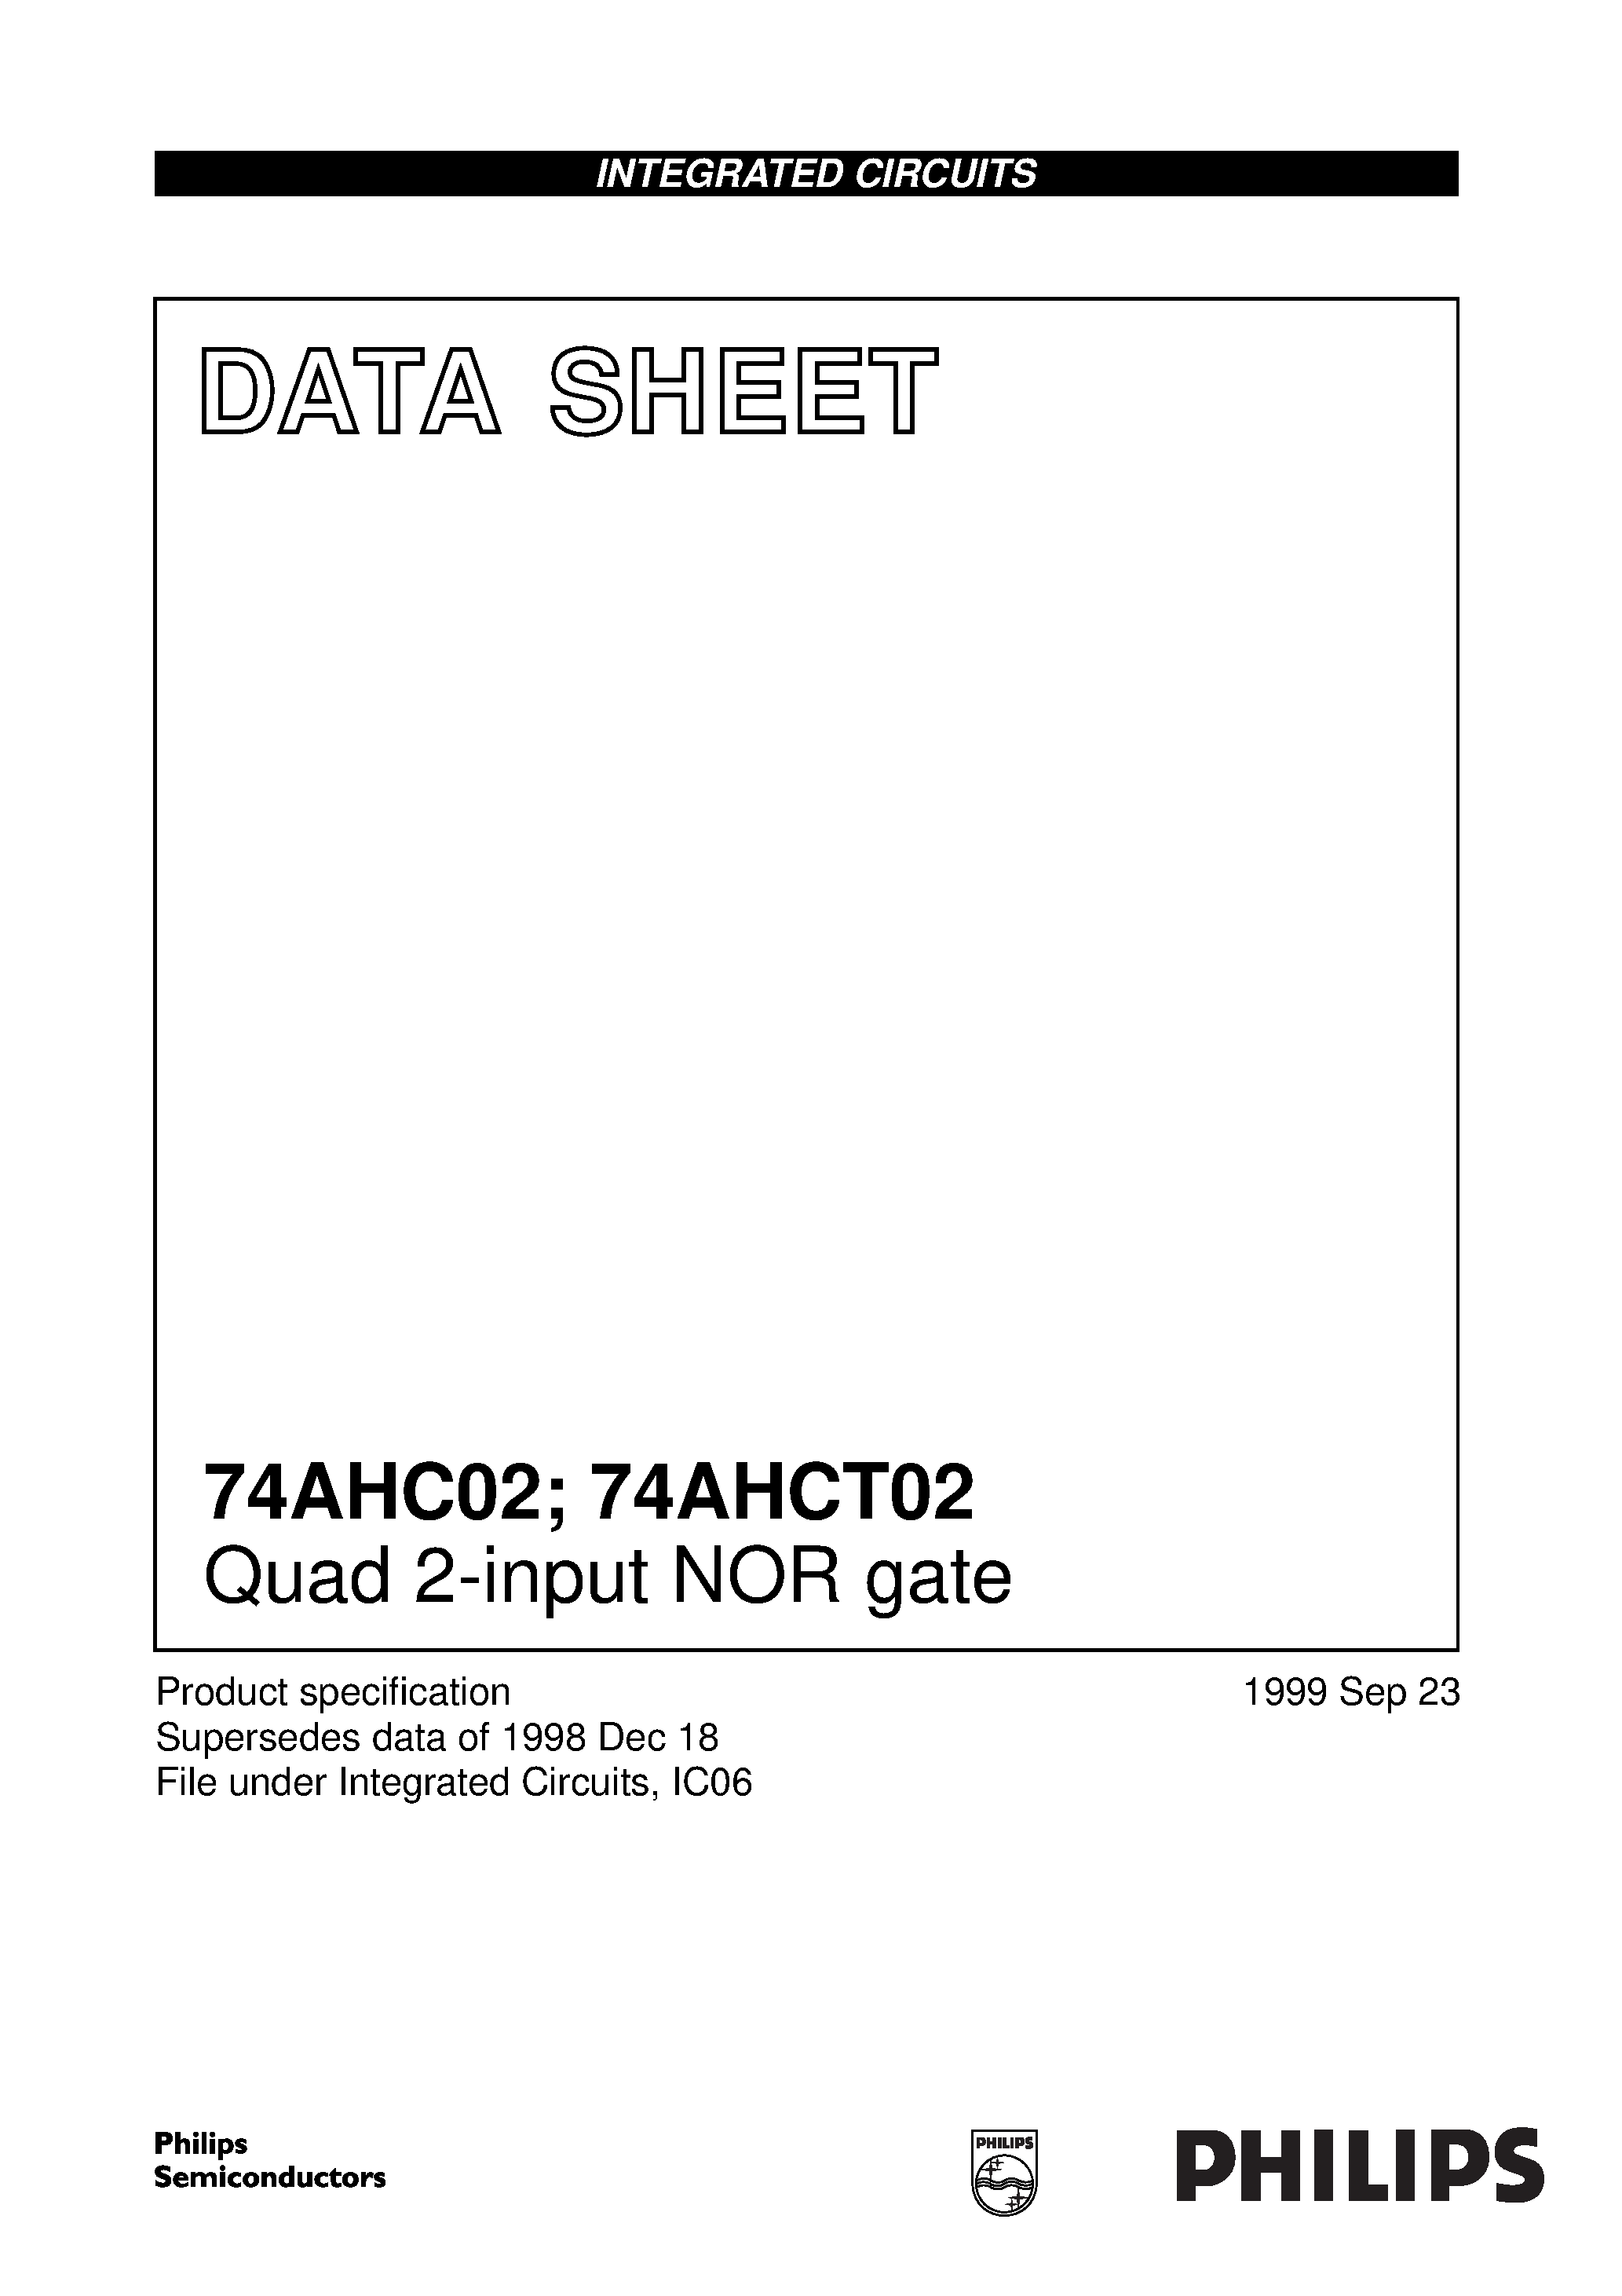 Даташит 74AHC02 - Quad 2-input NOR gate страница 1